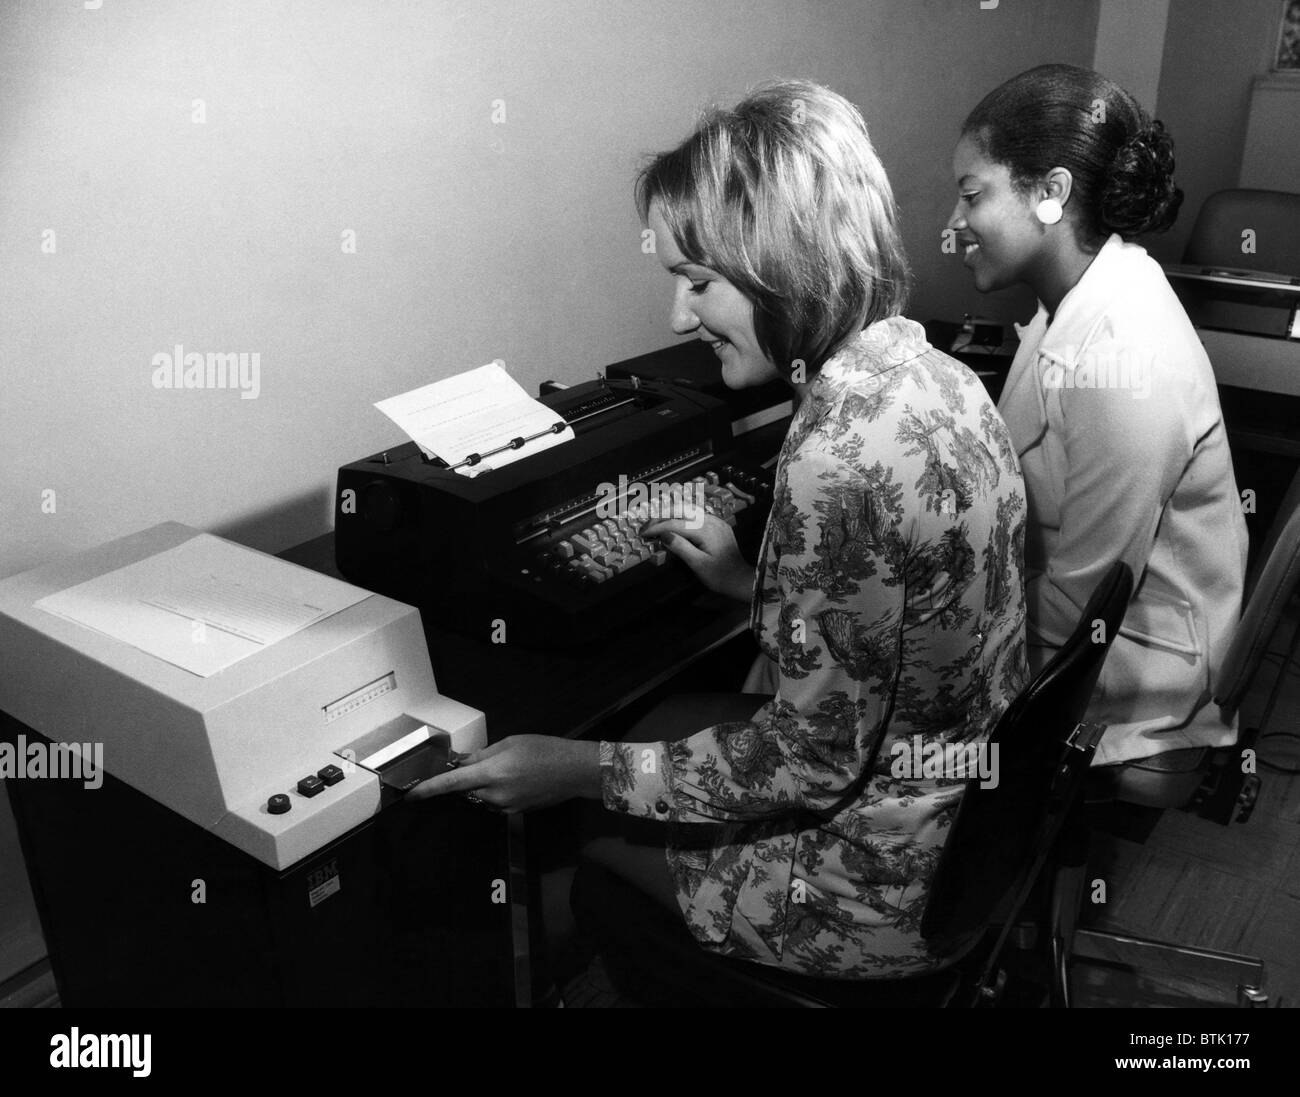 Una macchina da scrivere americana, noto come la scheda magnetica Selectric i nastri inchiostratori per macchine da scrivere, circa 1970s. Archivi CSU/cortesia Everett Collection Foto Stock